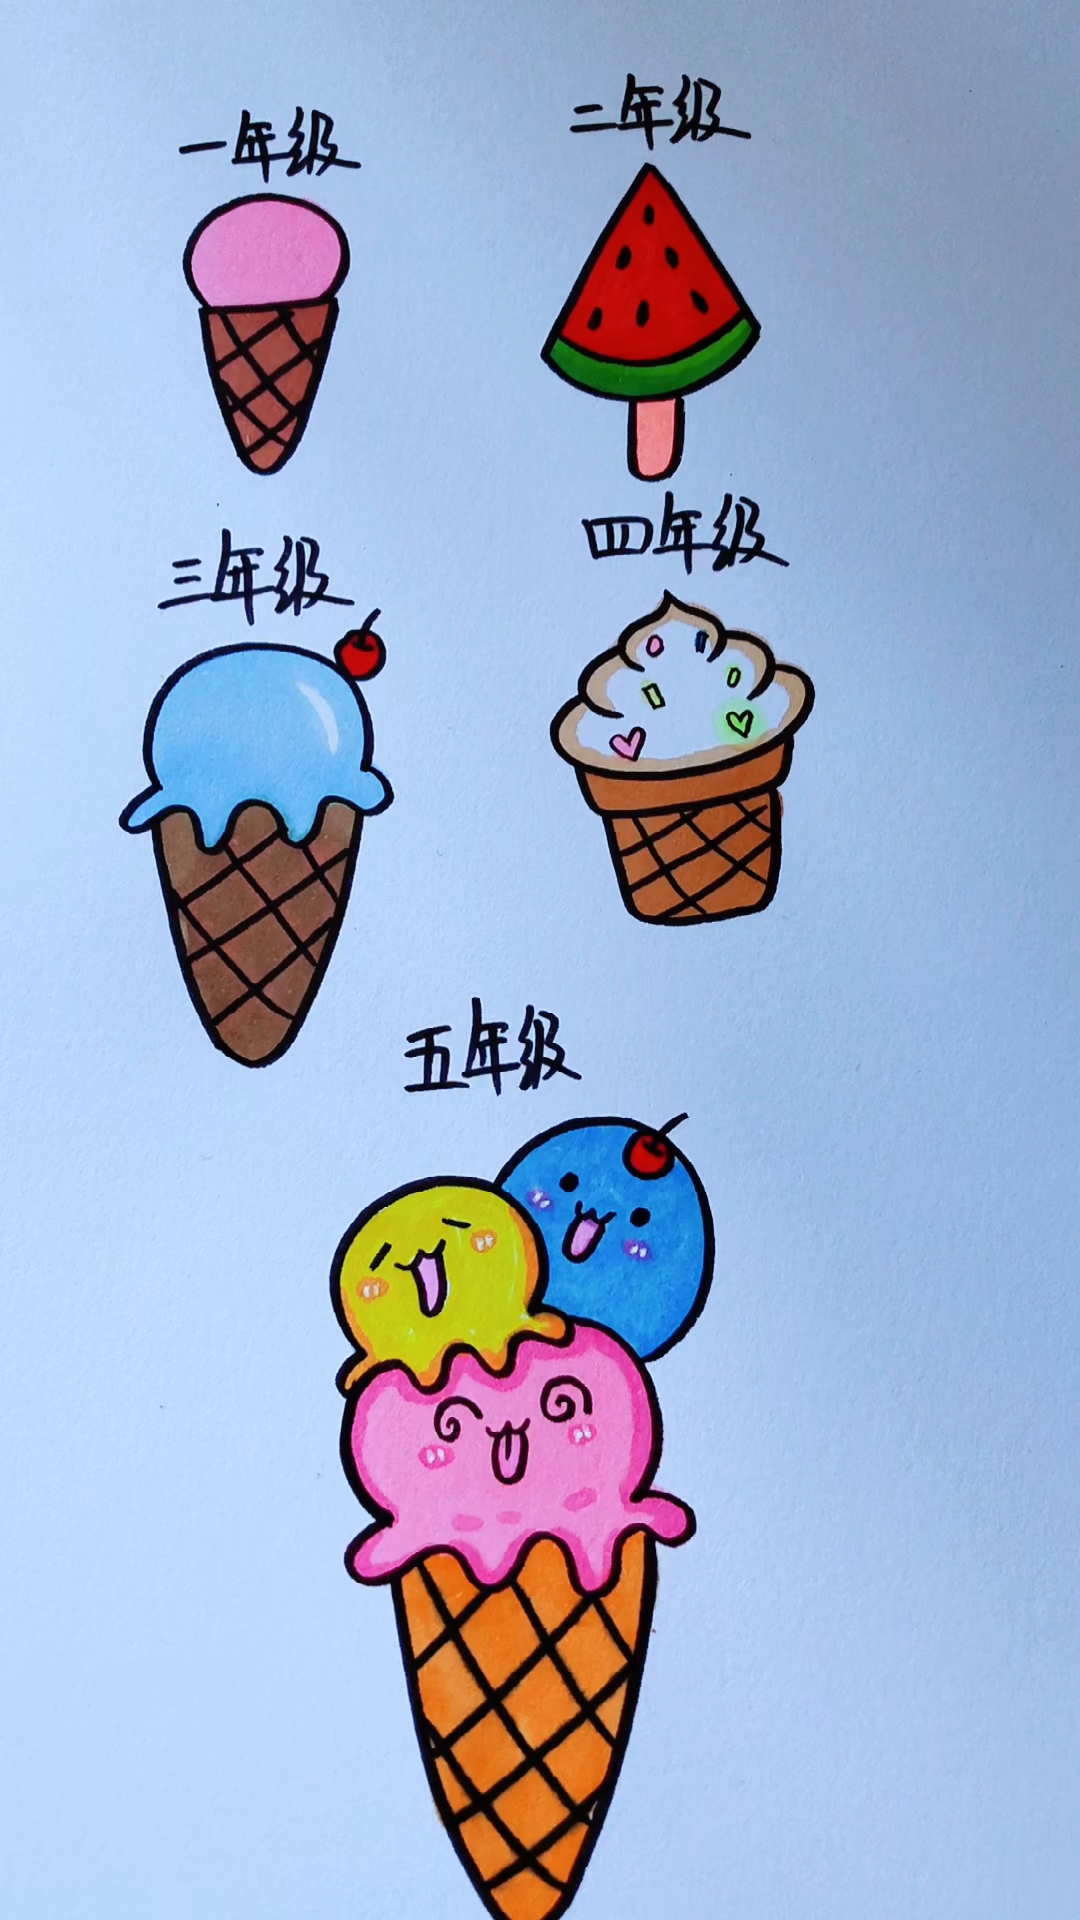 简笔画各种冰淇淋的画法你现在哪一种